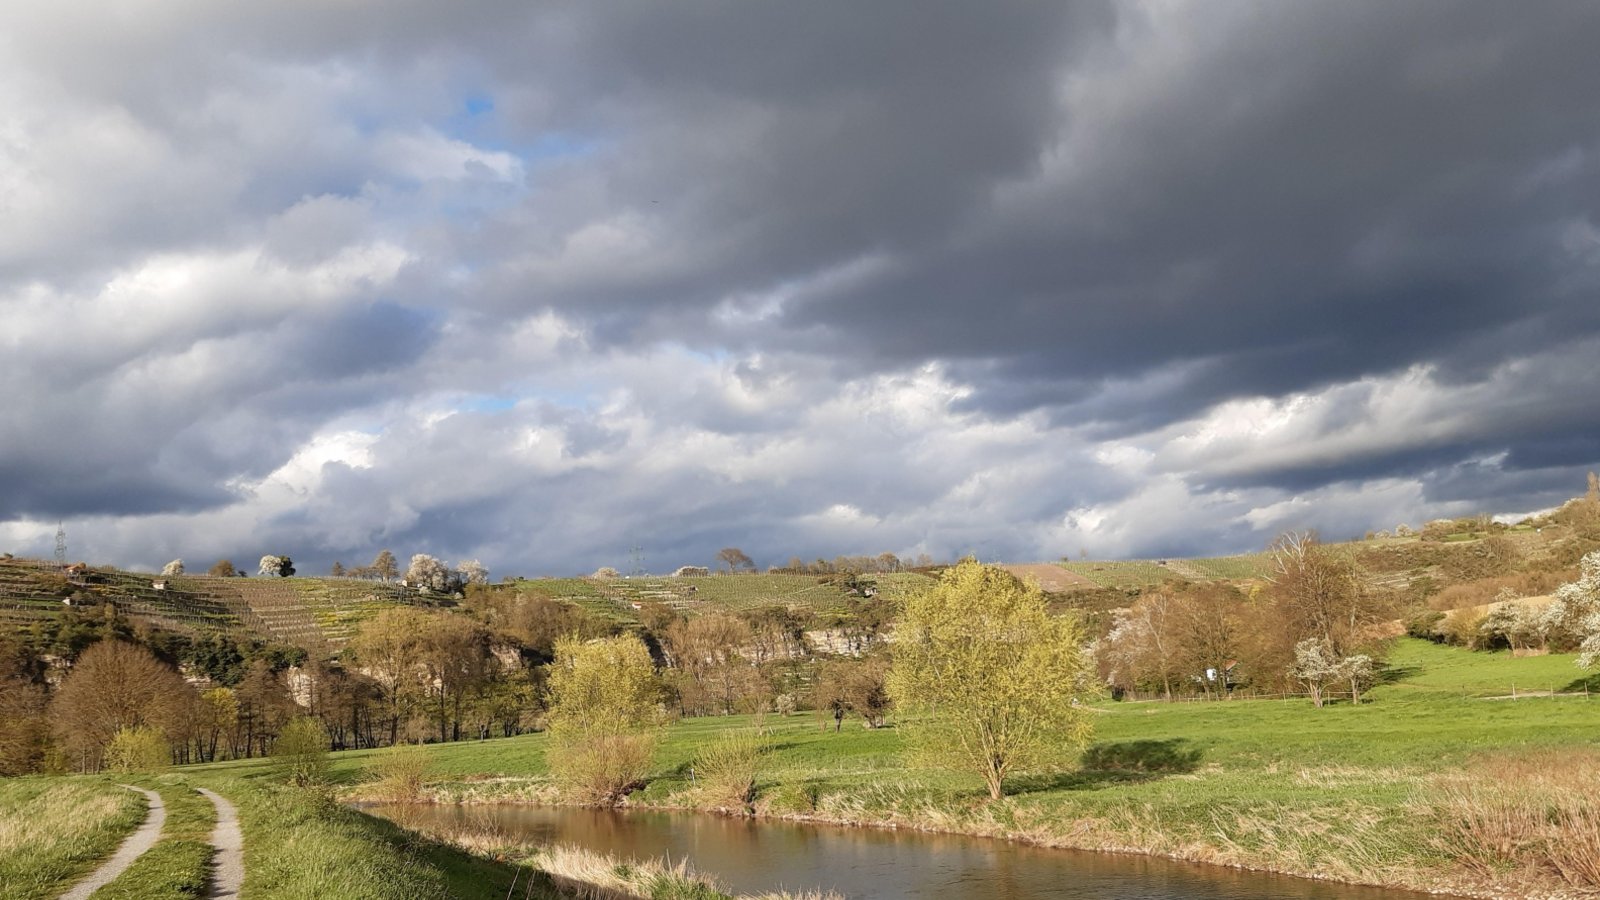 Die erfrischende Enz im Naturschutzgebiet Felsengärten Mühlhausen samt Wolkenspiel hat unsere Leserin Gudrun Kraft-von Hausen fotografisch festgehalten.